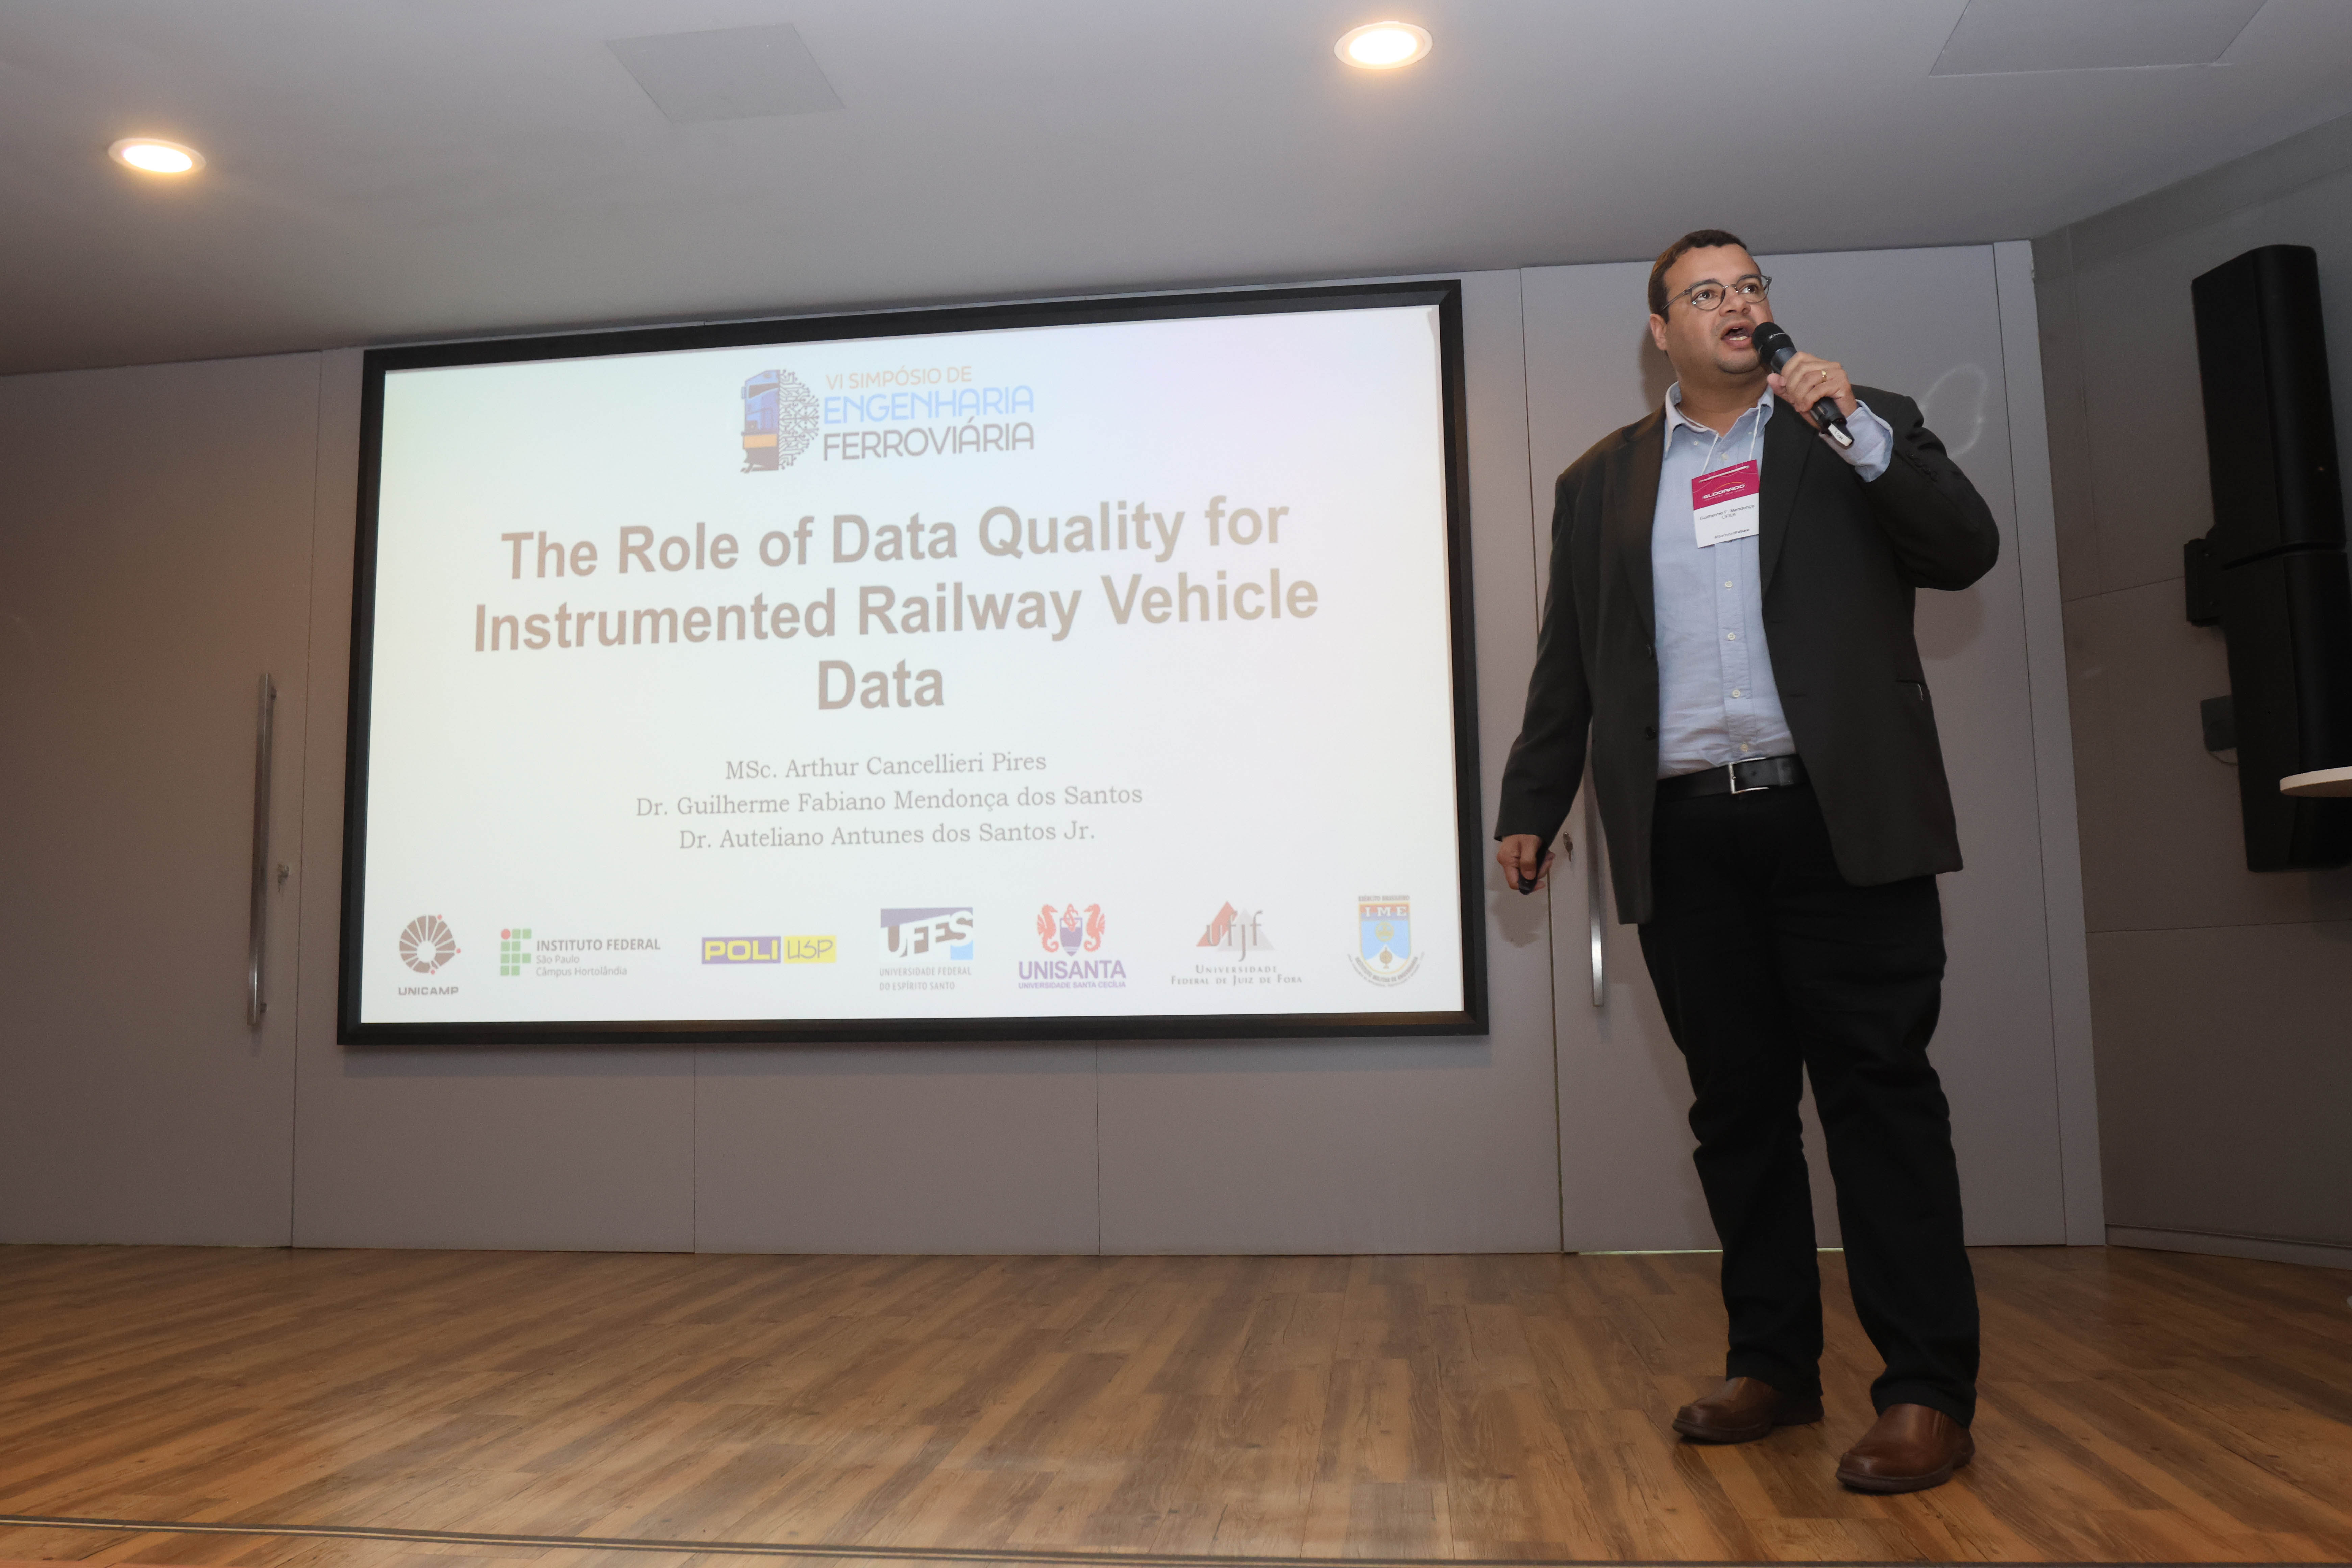 Pesquisa e inovação: The role of data quality for instrumented railway vehicle data